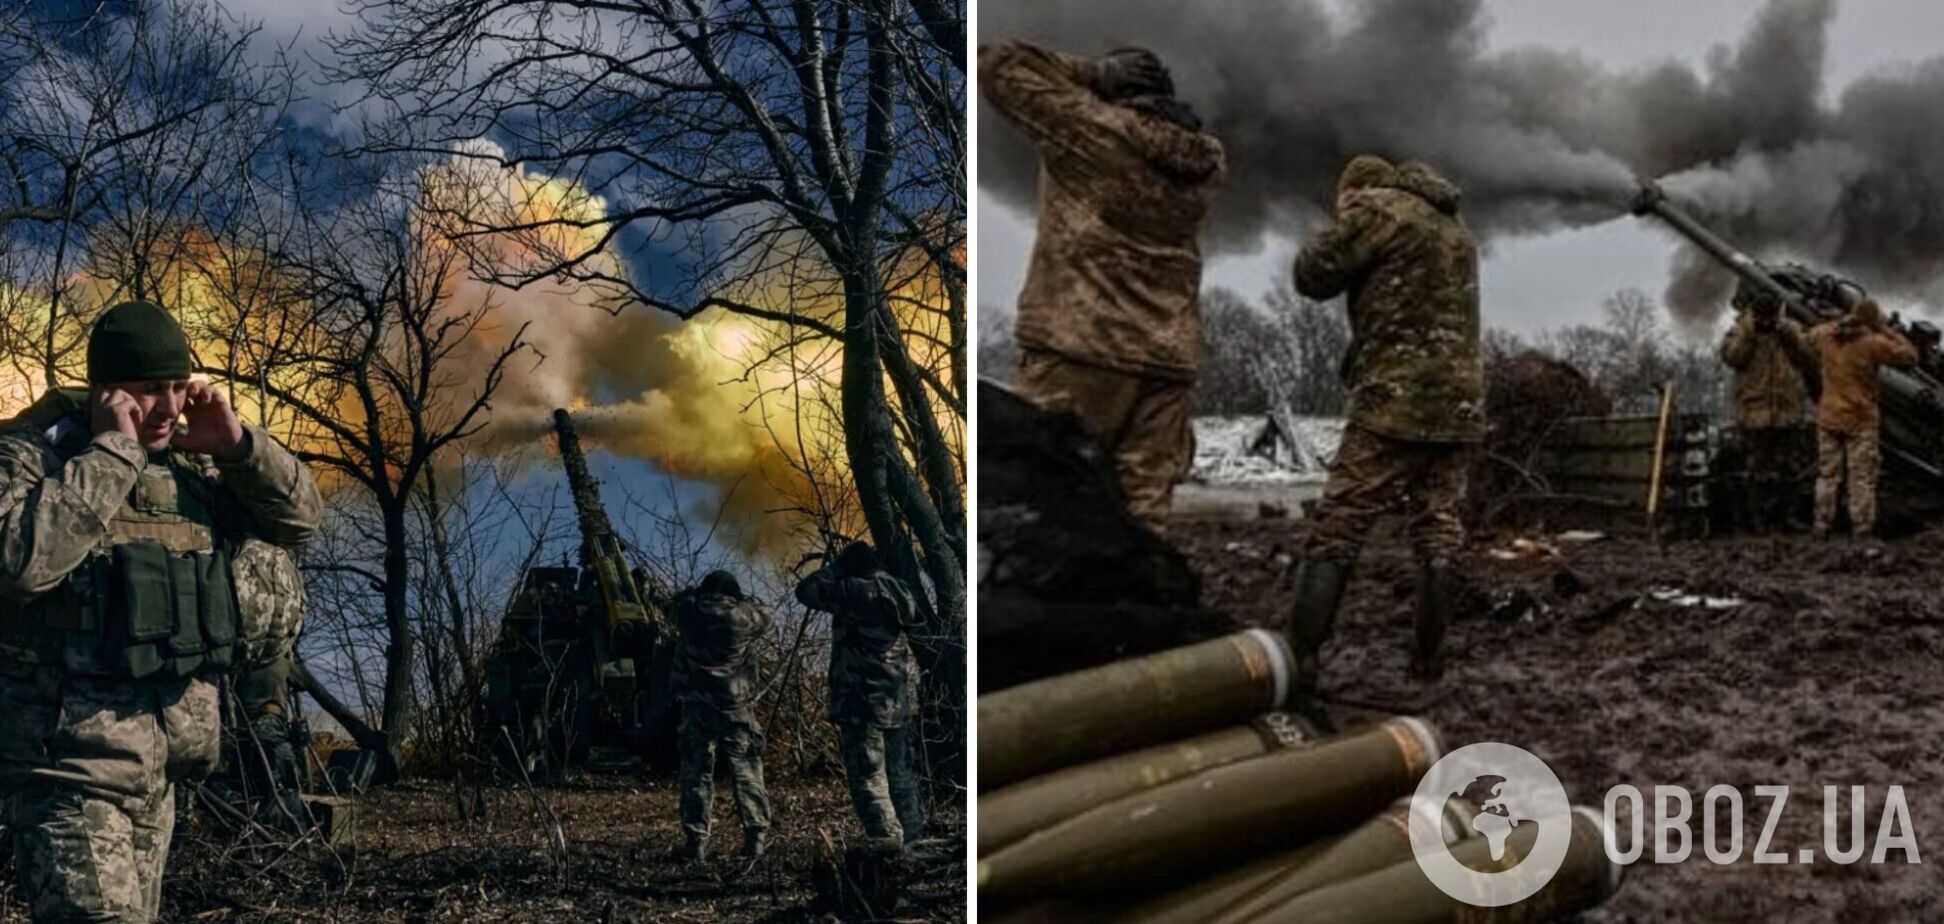 Чехия вместе с союзниками будет искать варианты увеличения поставок боеприпасов Украине, – Павел